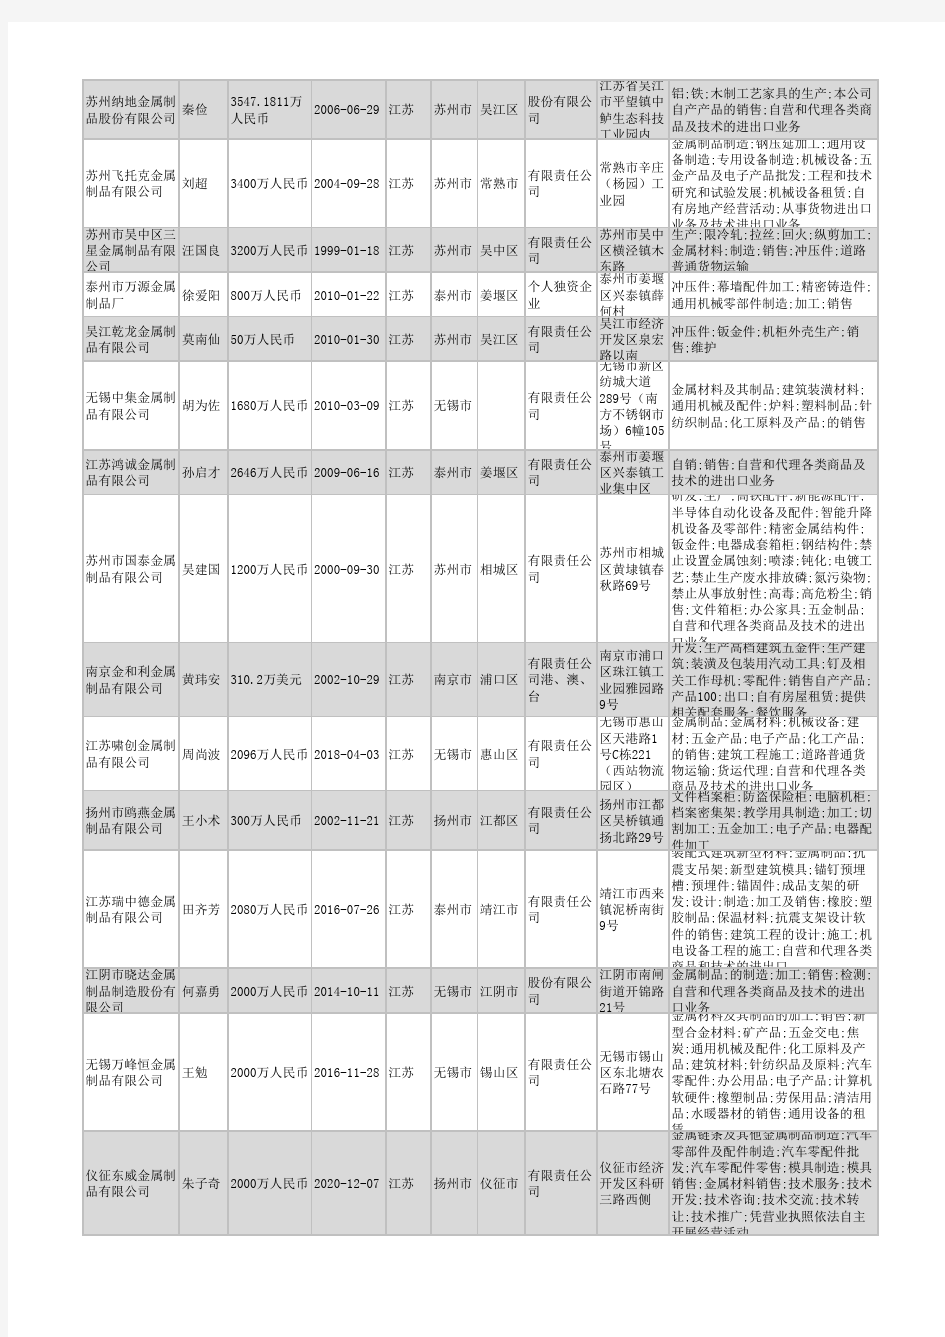 2021年江苏省金属制品行业企业名录11115家